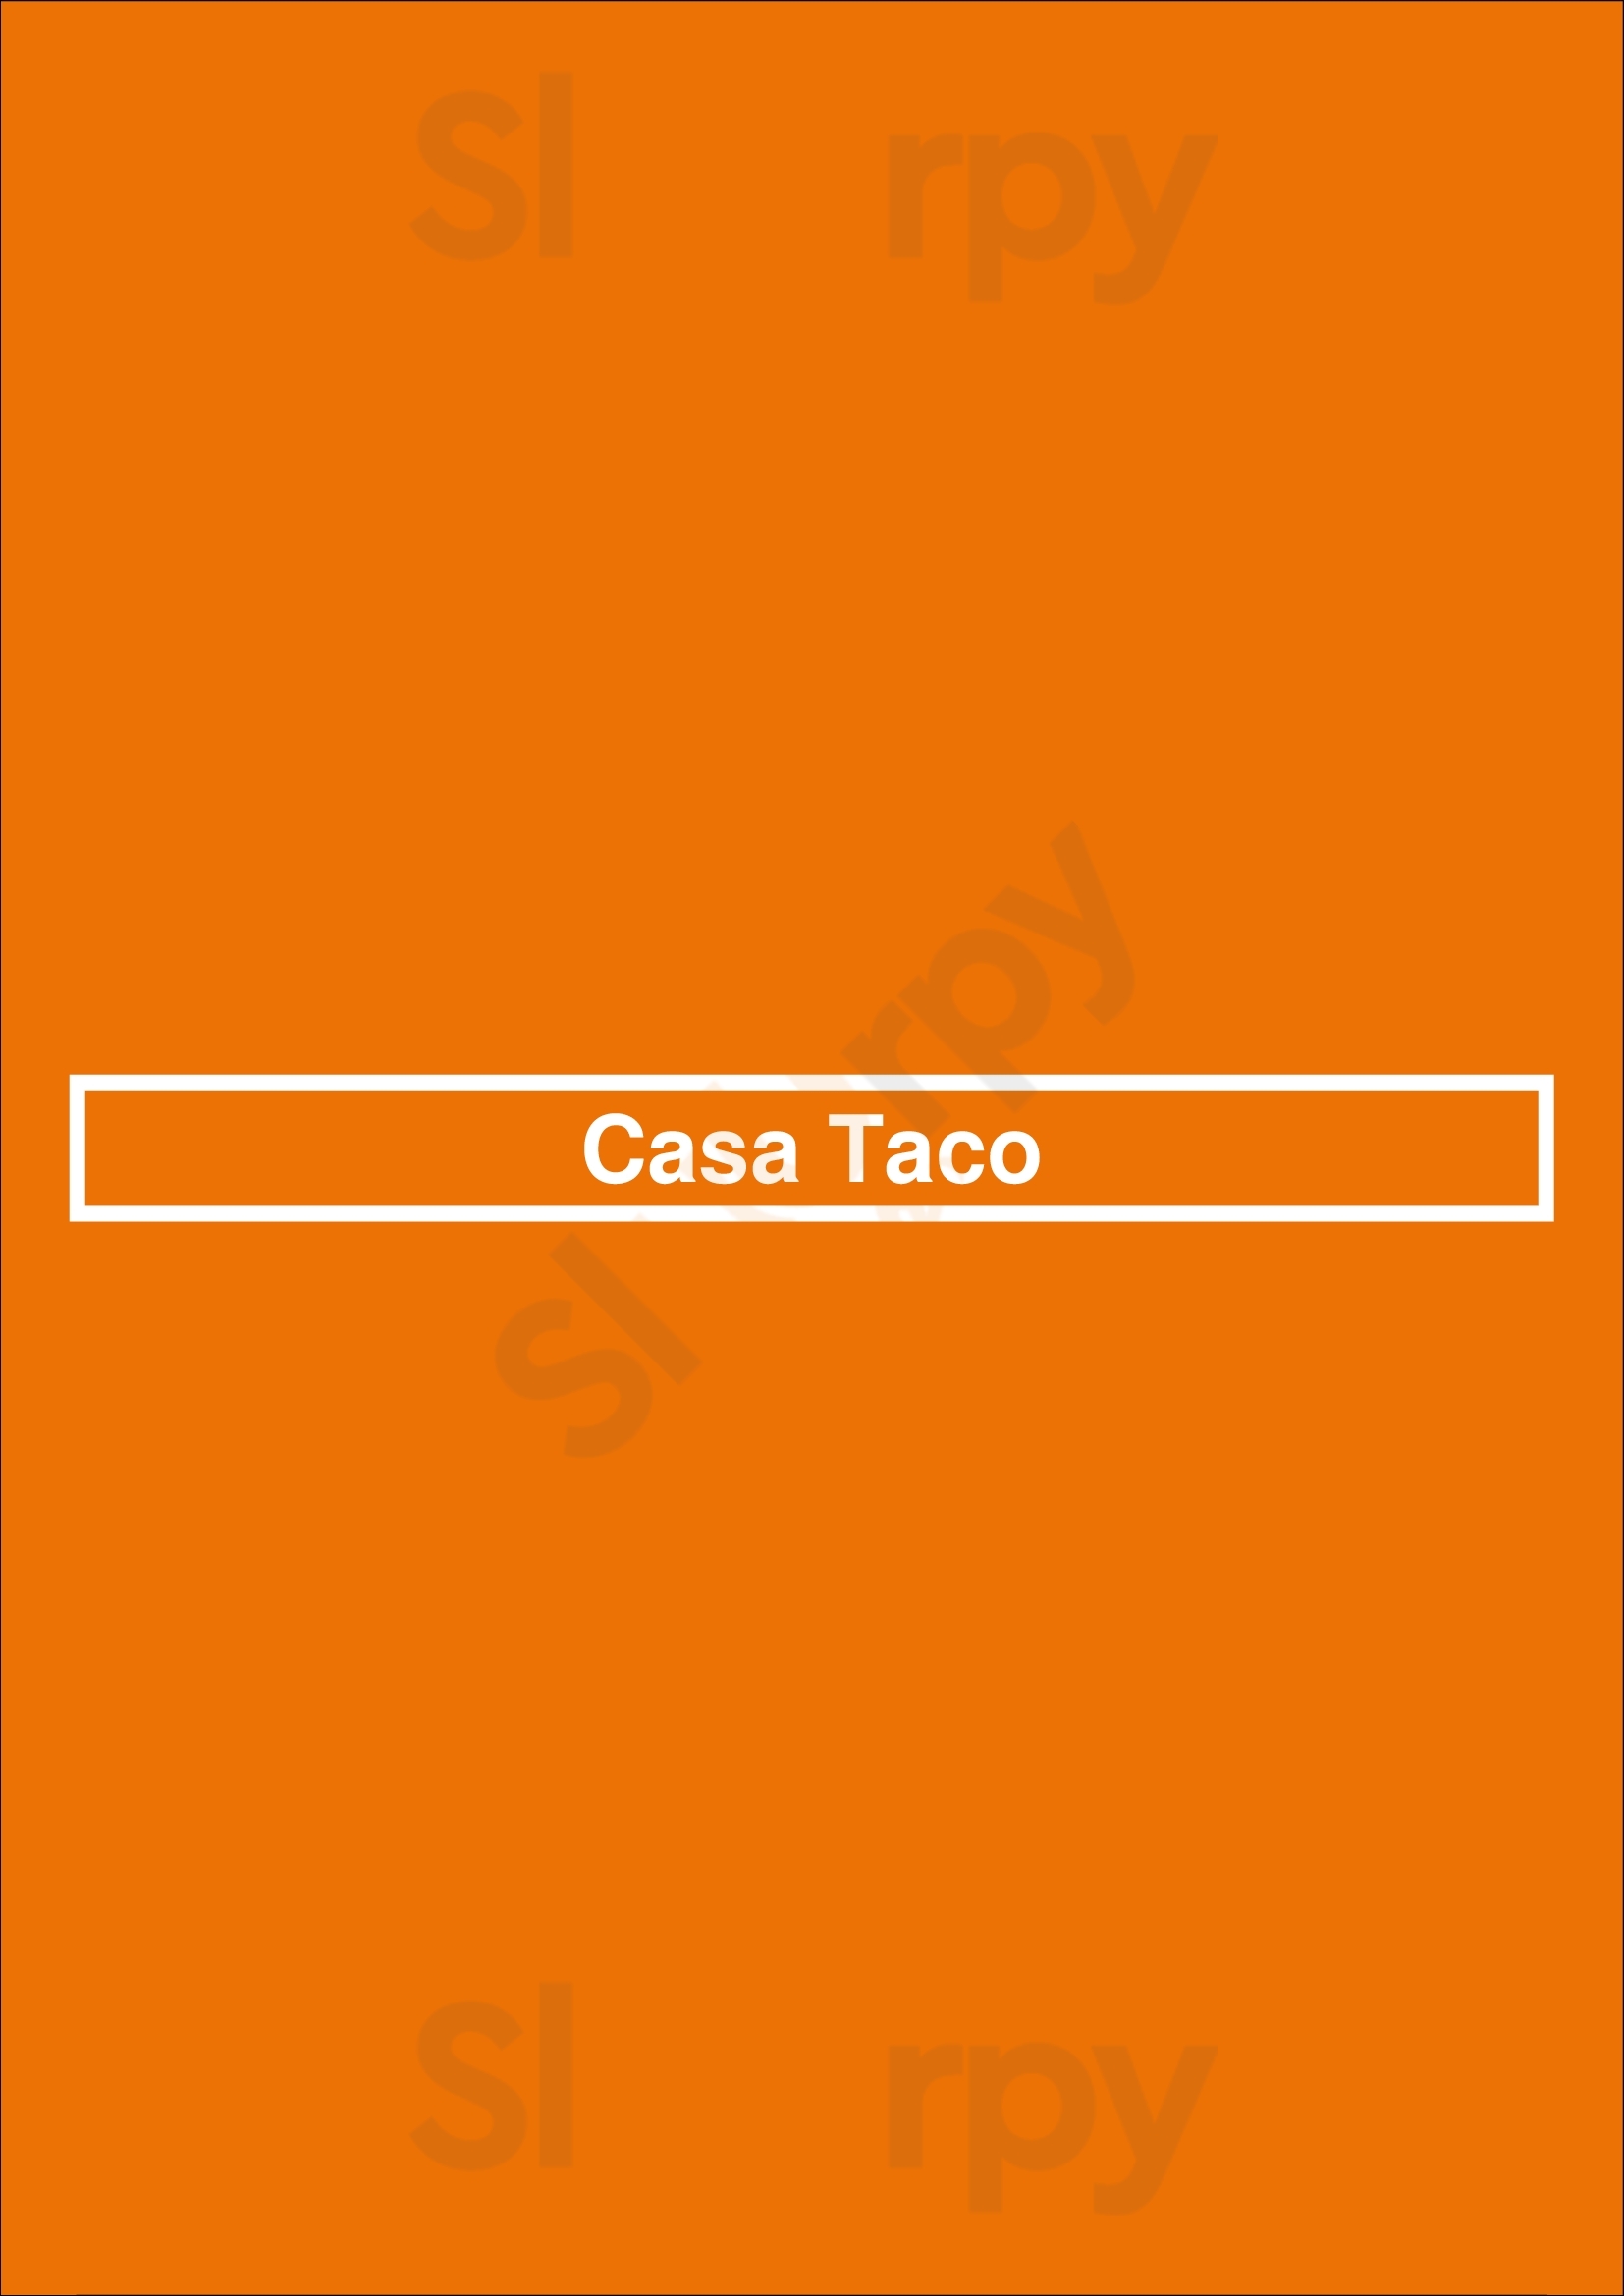 Casa Taco Albuquerque Menu - 1